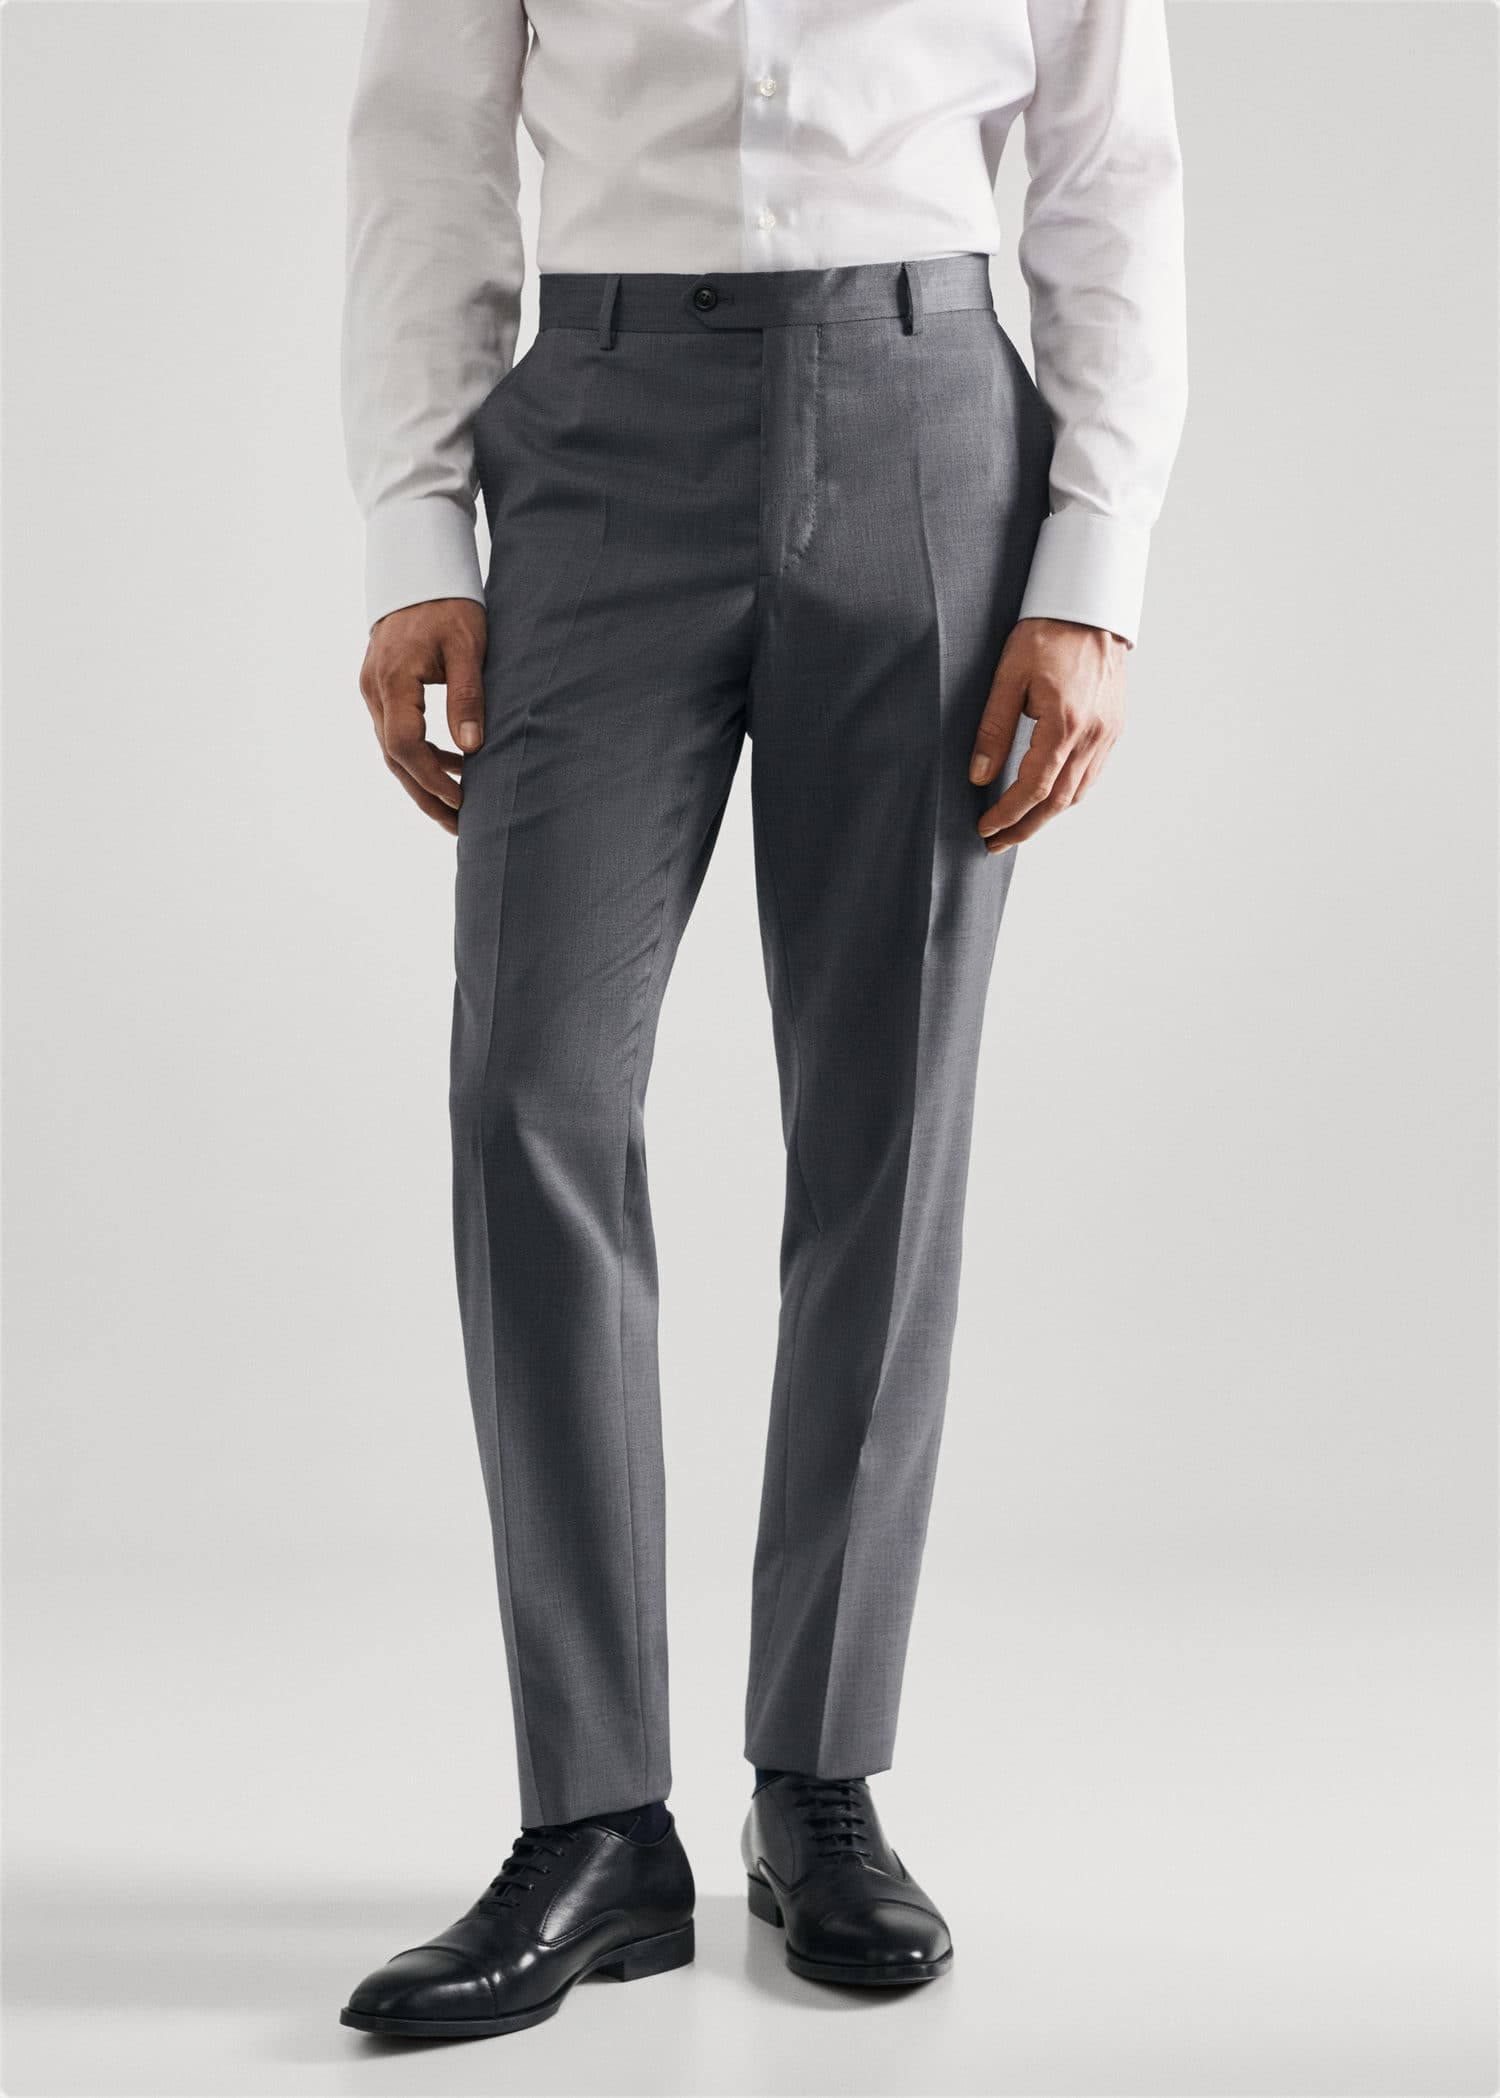 Slim fit virgin wool suit trousers - Medium plane